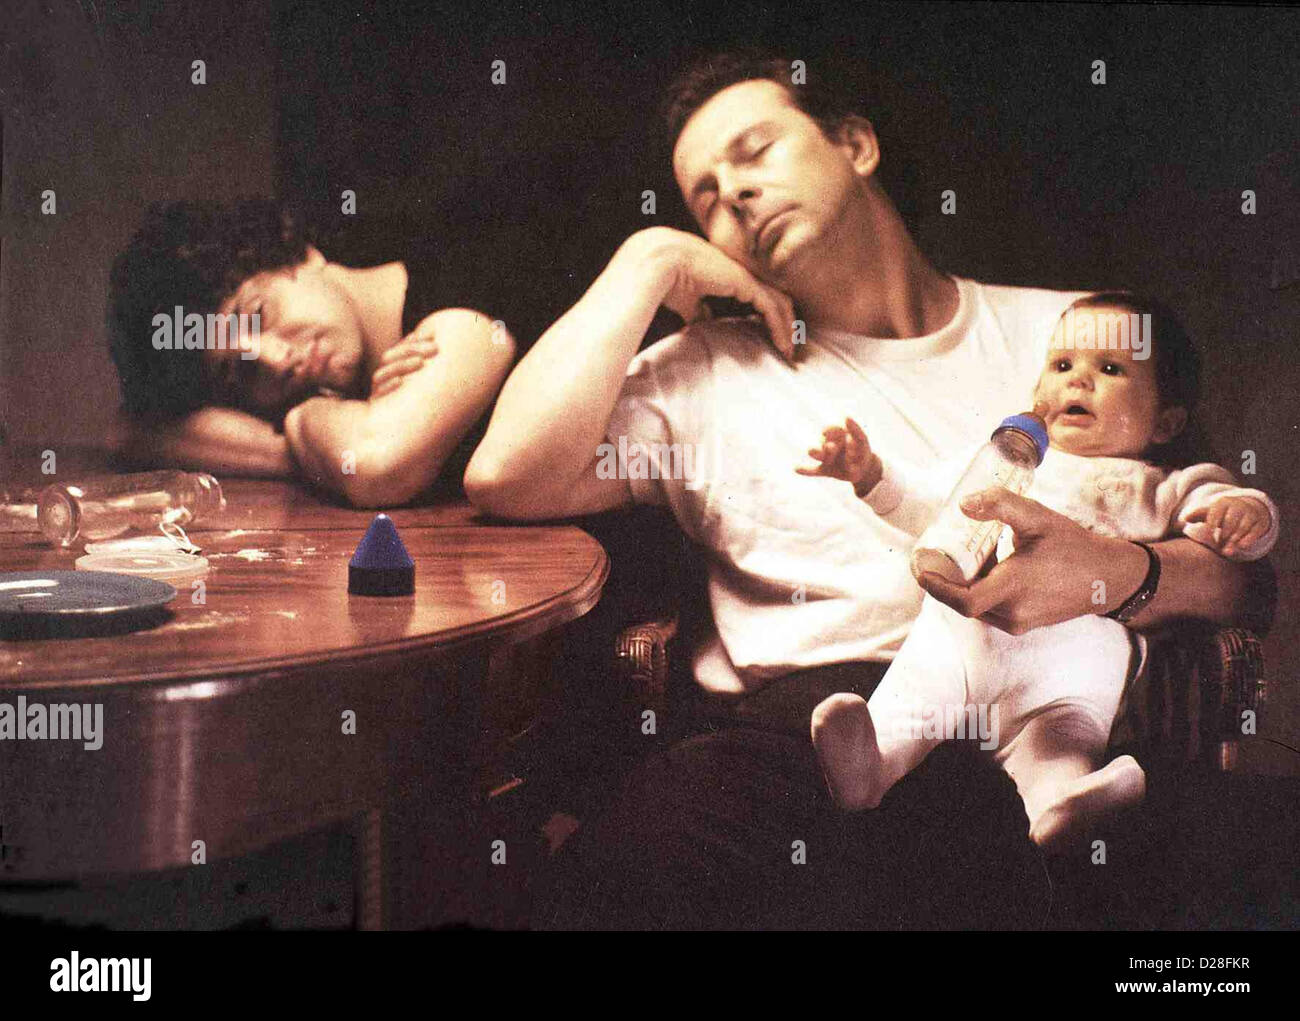 Drei Maenner Und Ein Baby  Trois Hommes Et Un Couffin  Michel Boujenah, Roland Giraud Das Leben mit Baby (Jennifer Moret) Stock Photo